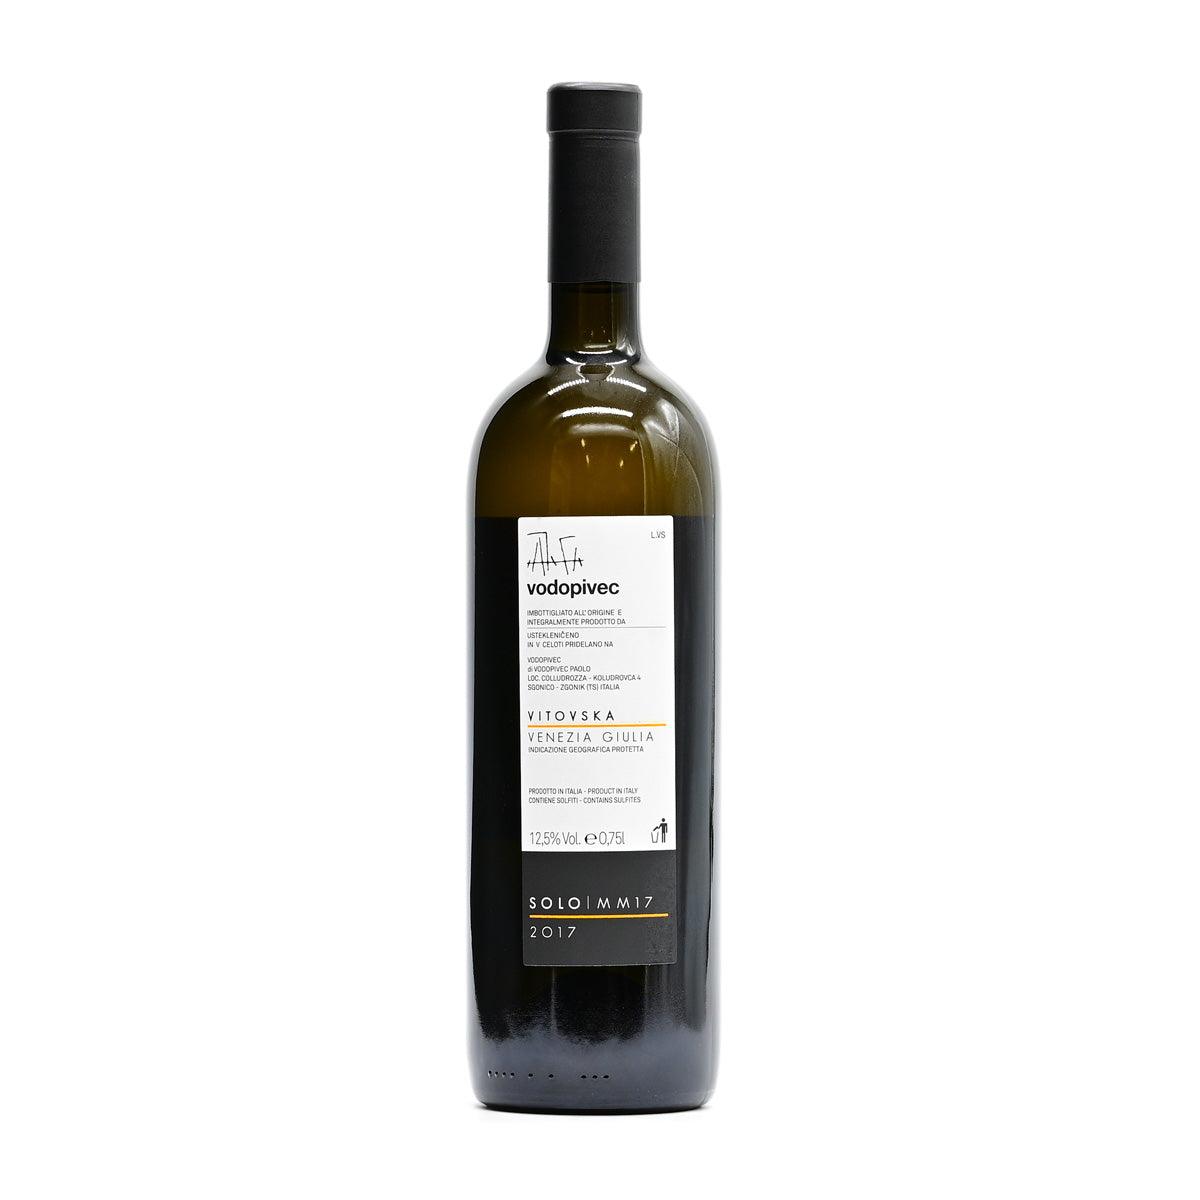 Vodopivec Vitovska Solo MM17 2017 - White Wine - GDV Fine Wines® - 2017, 750ml, Friuli-Venezia Giulia, Italy, Venezia Giulia, Vodopivec, White Wine, Wine Product